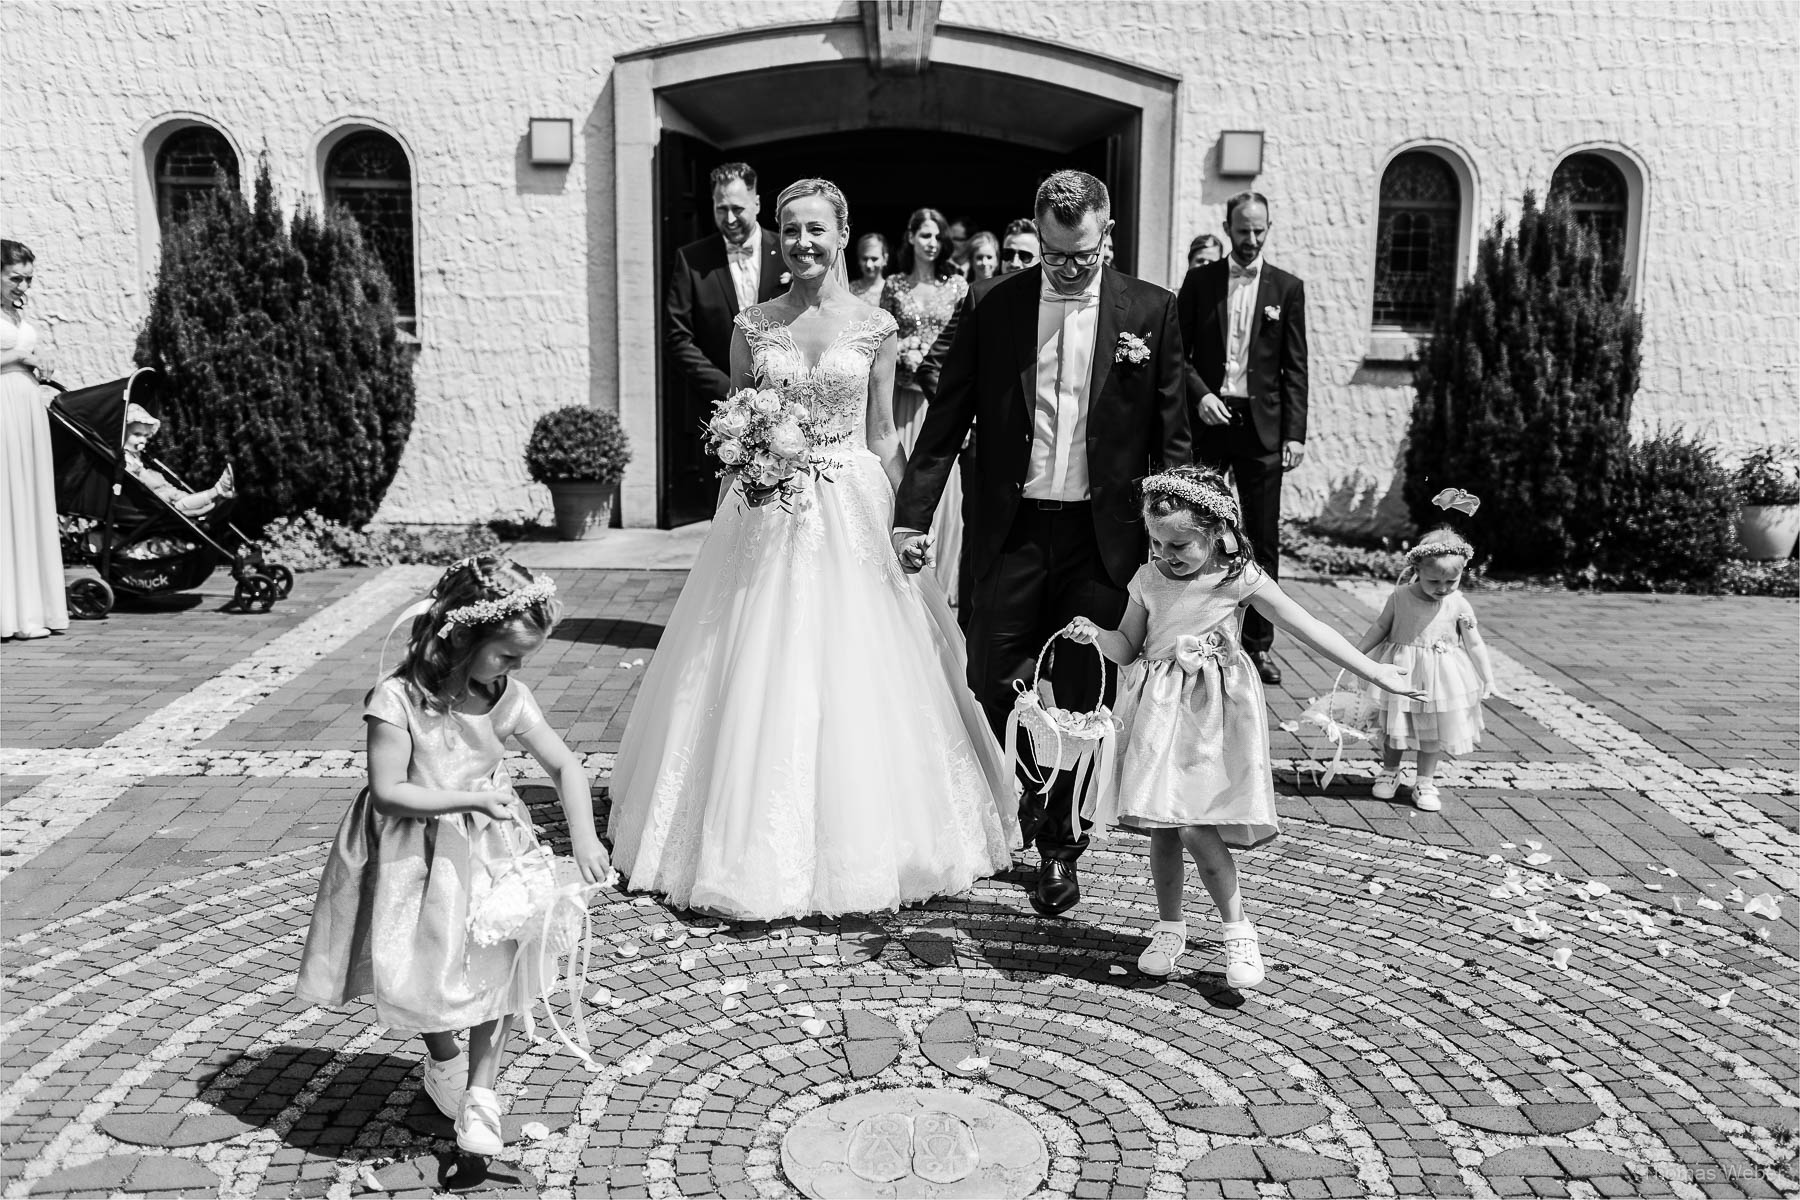 Hochzeit in Rastede, Fotograf Oldenburg, Thomas Weber